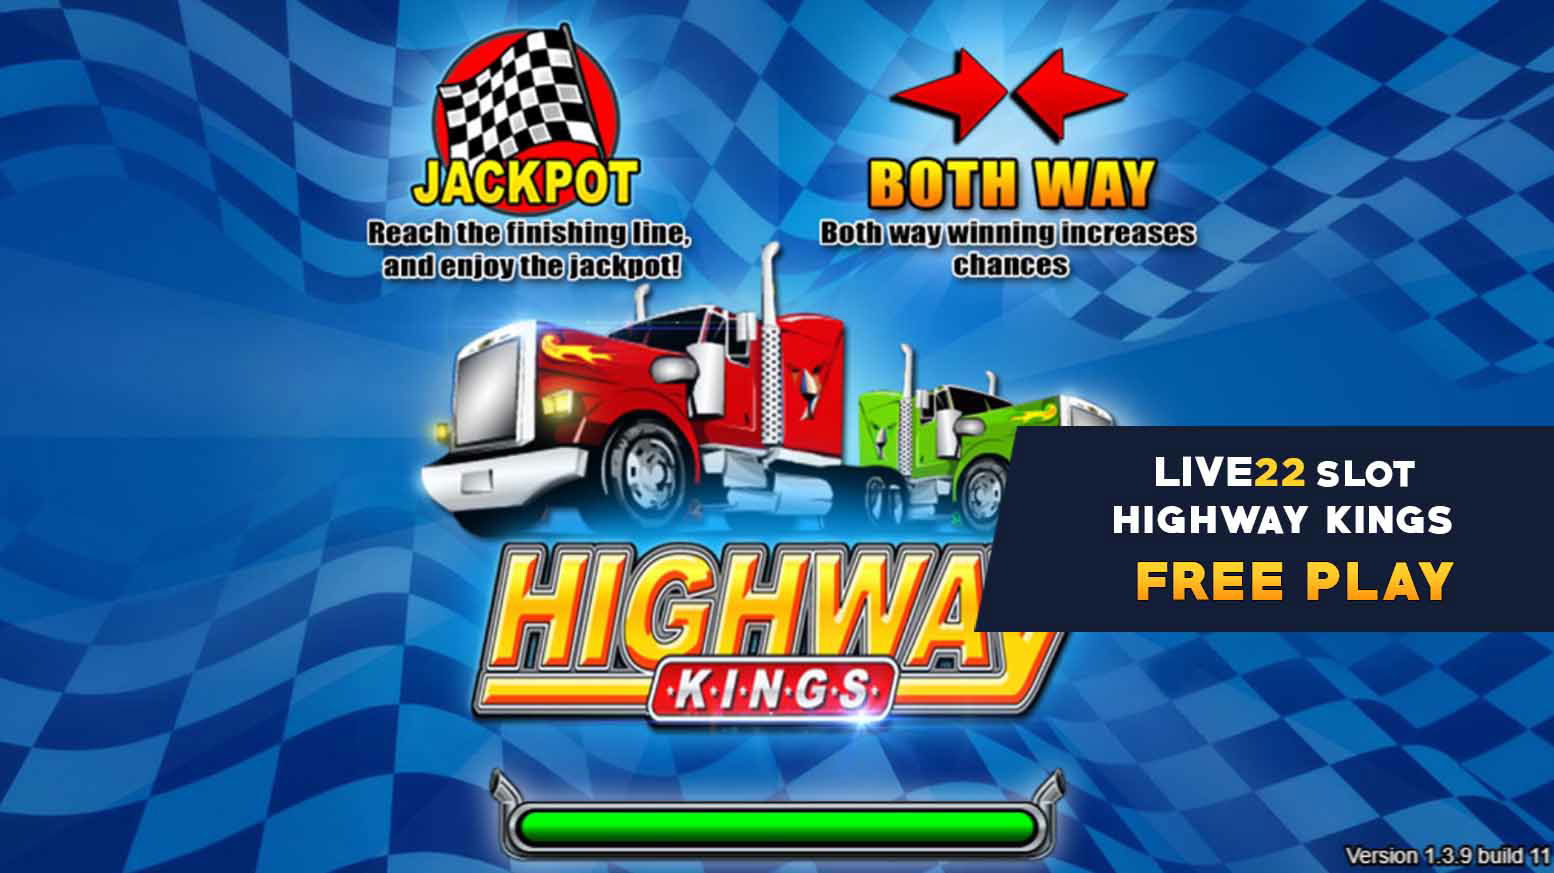 Free Play 4 Highway Kings Slot Game - Live22 Myanmar (1)